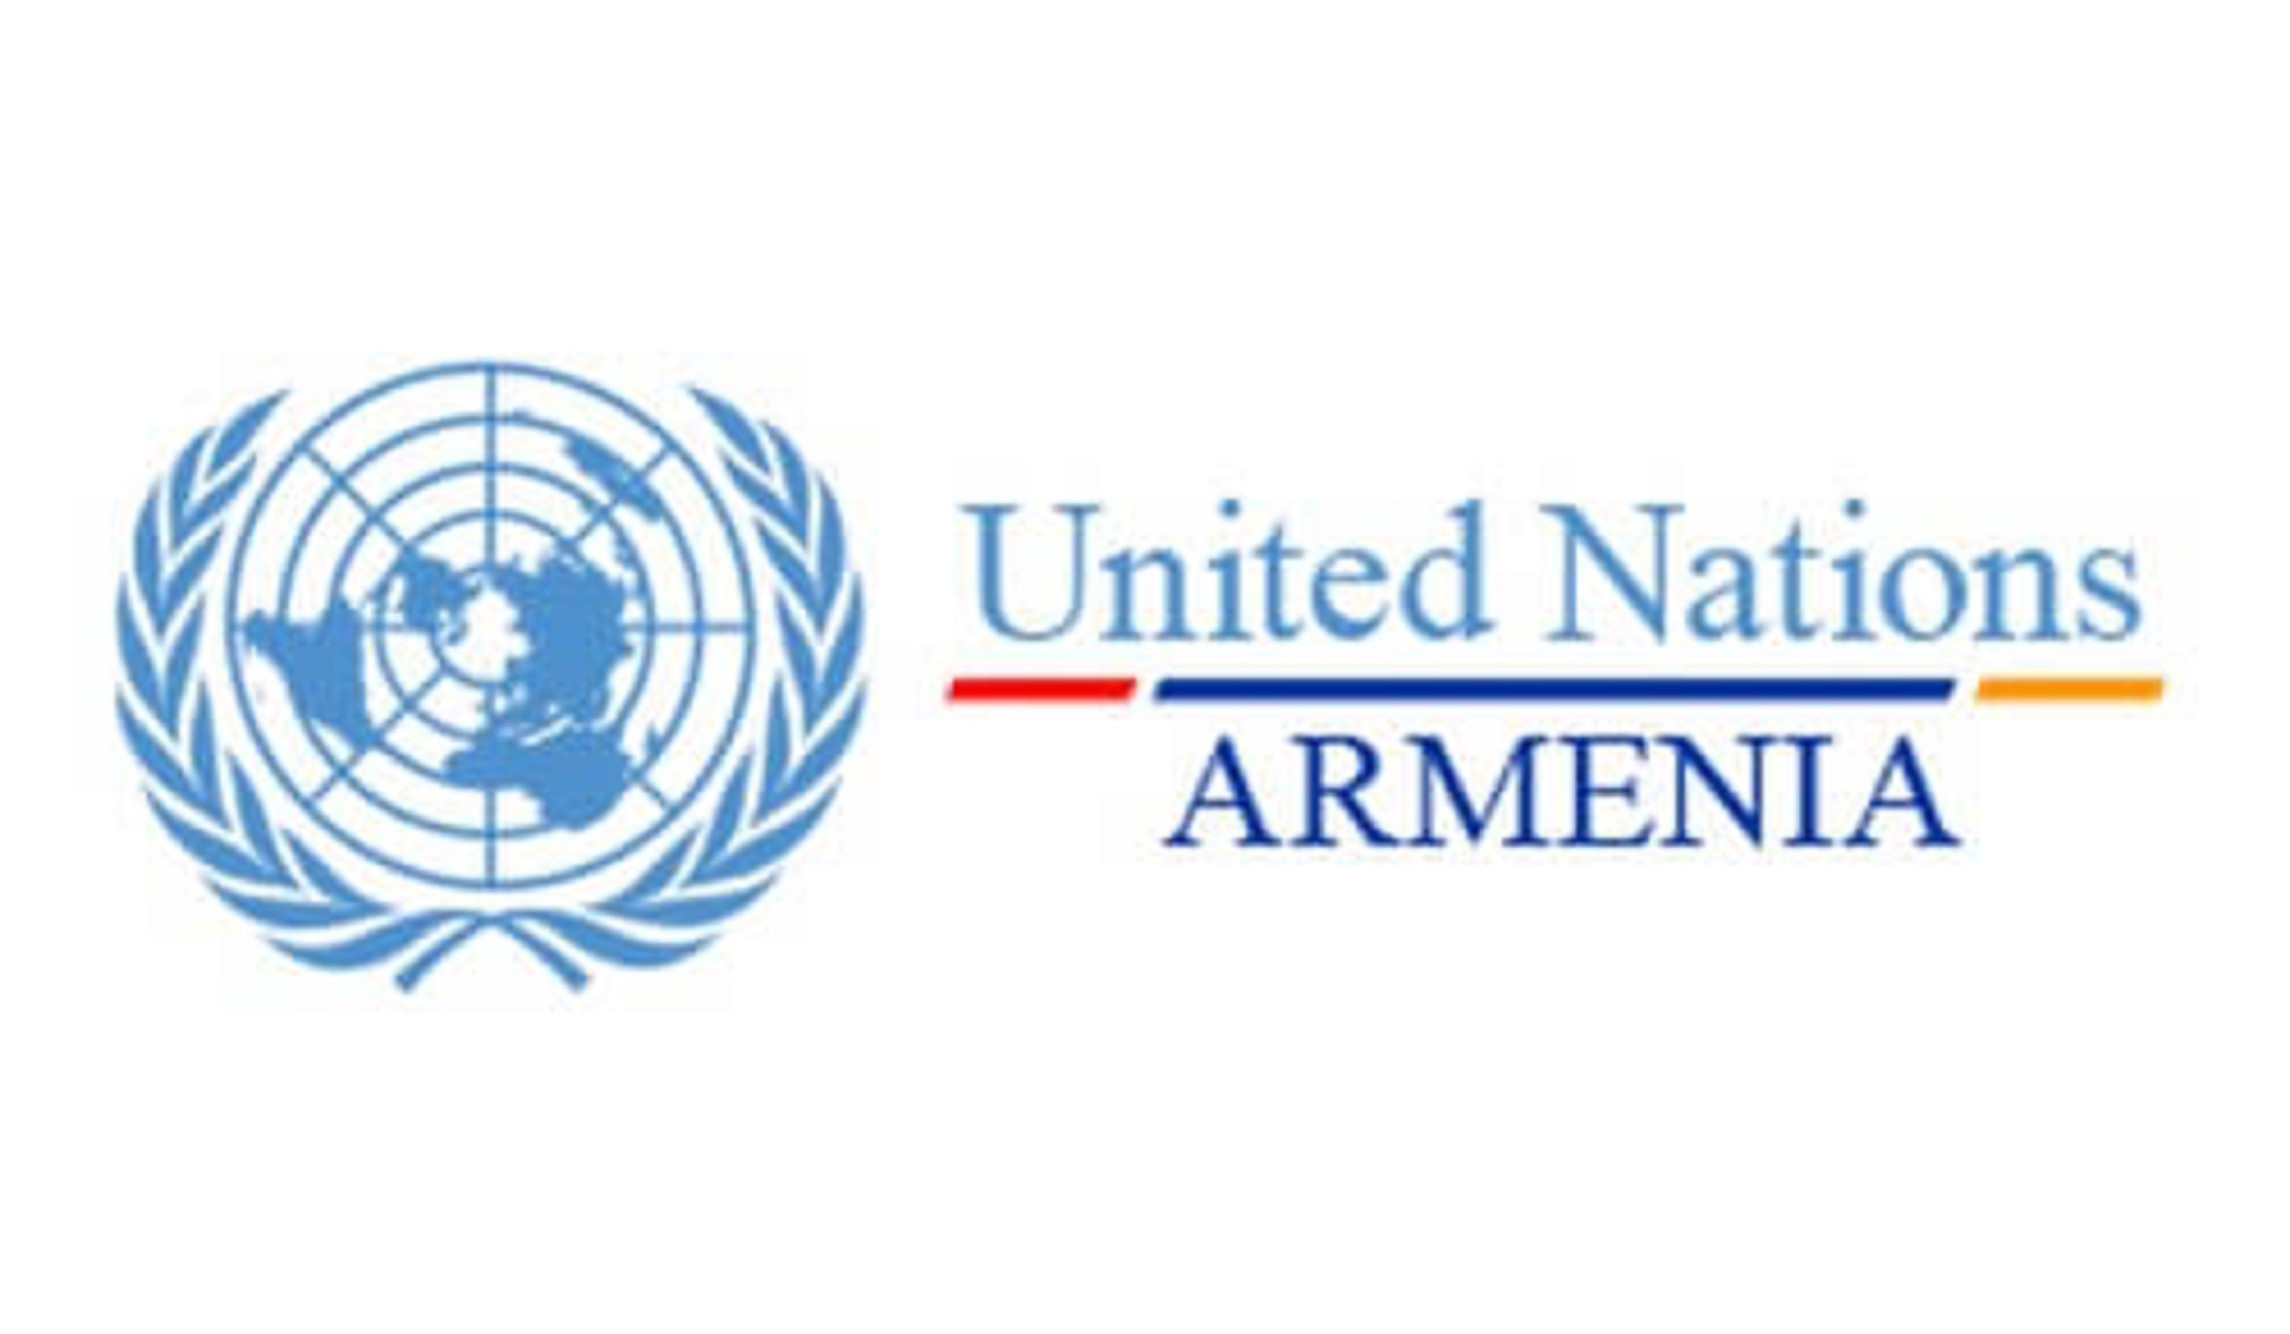 ՄԱԿ-ը հրապարակել է Հայաստանի 2021 թ. տարեկան արդյունքների զեկույցը